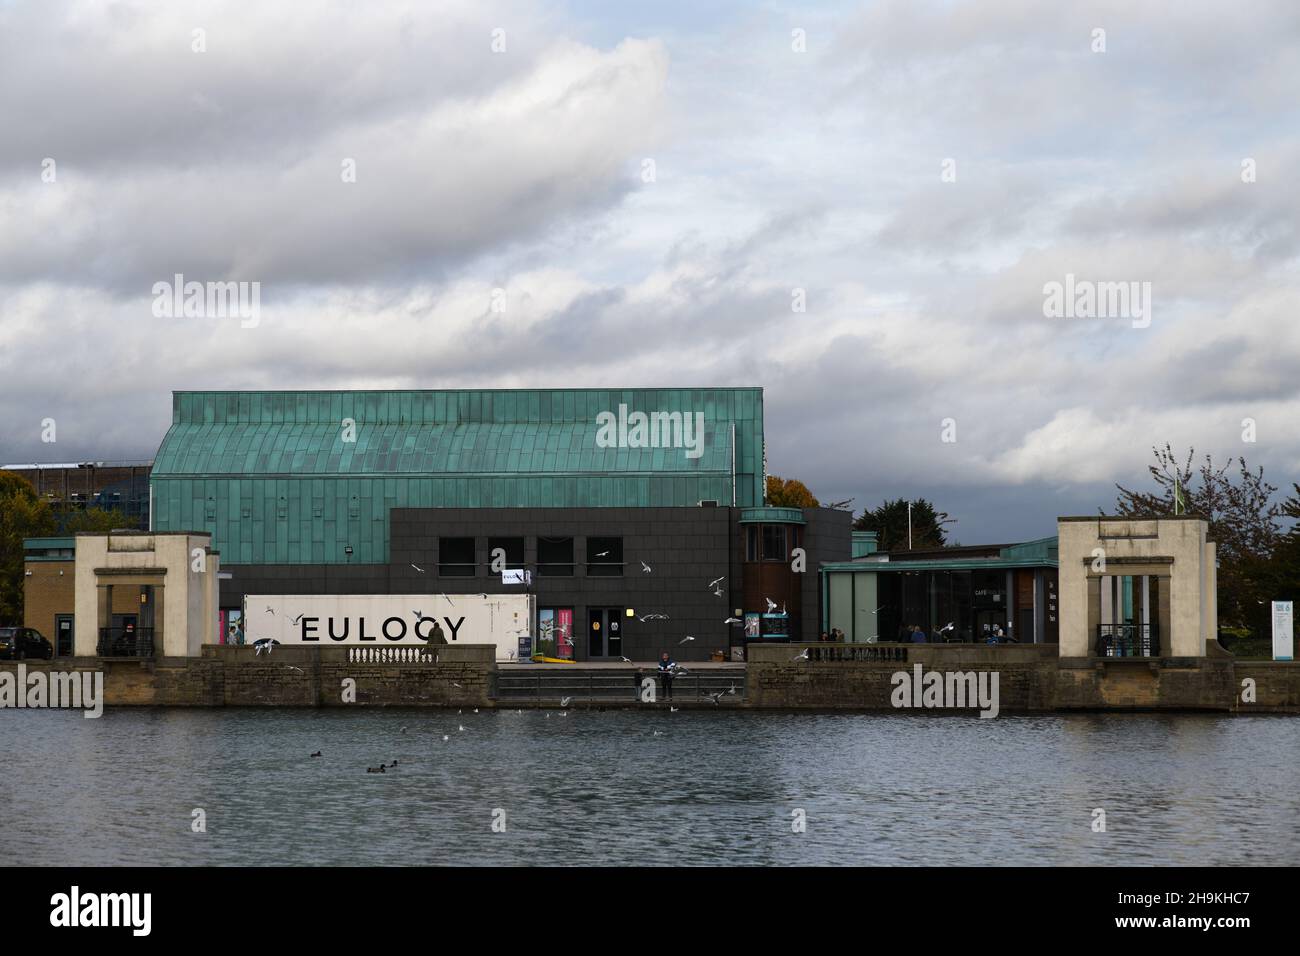 Lakeside Arts Pavilion, with Eulogy container, Nottingham Uni Park. Stock Photo